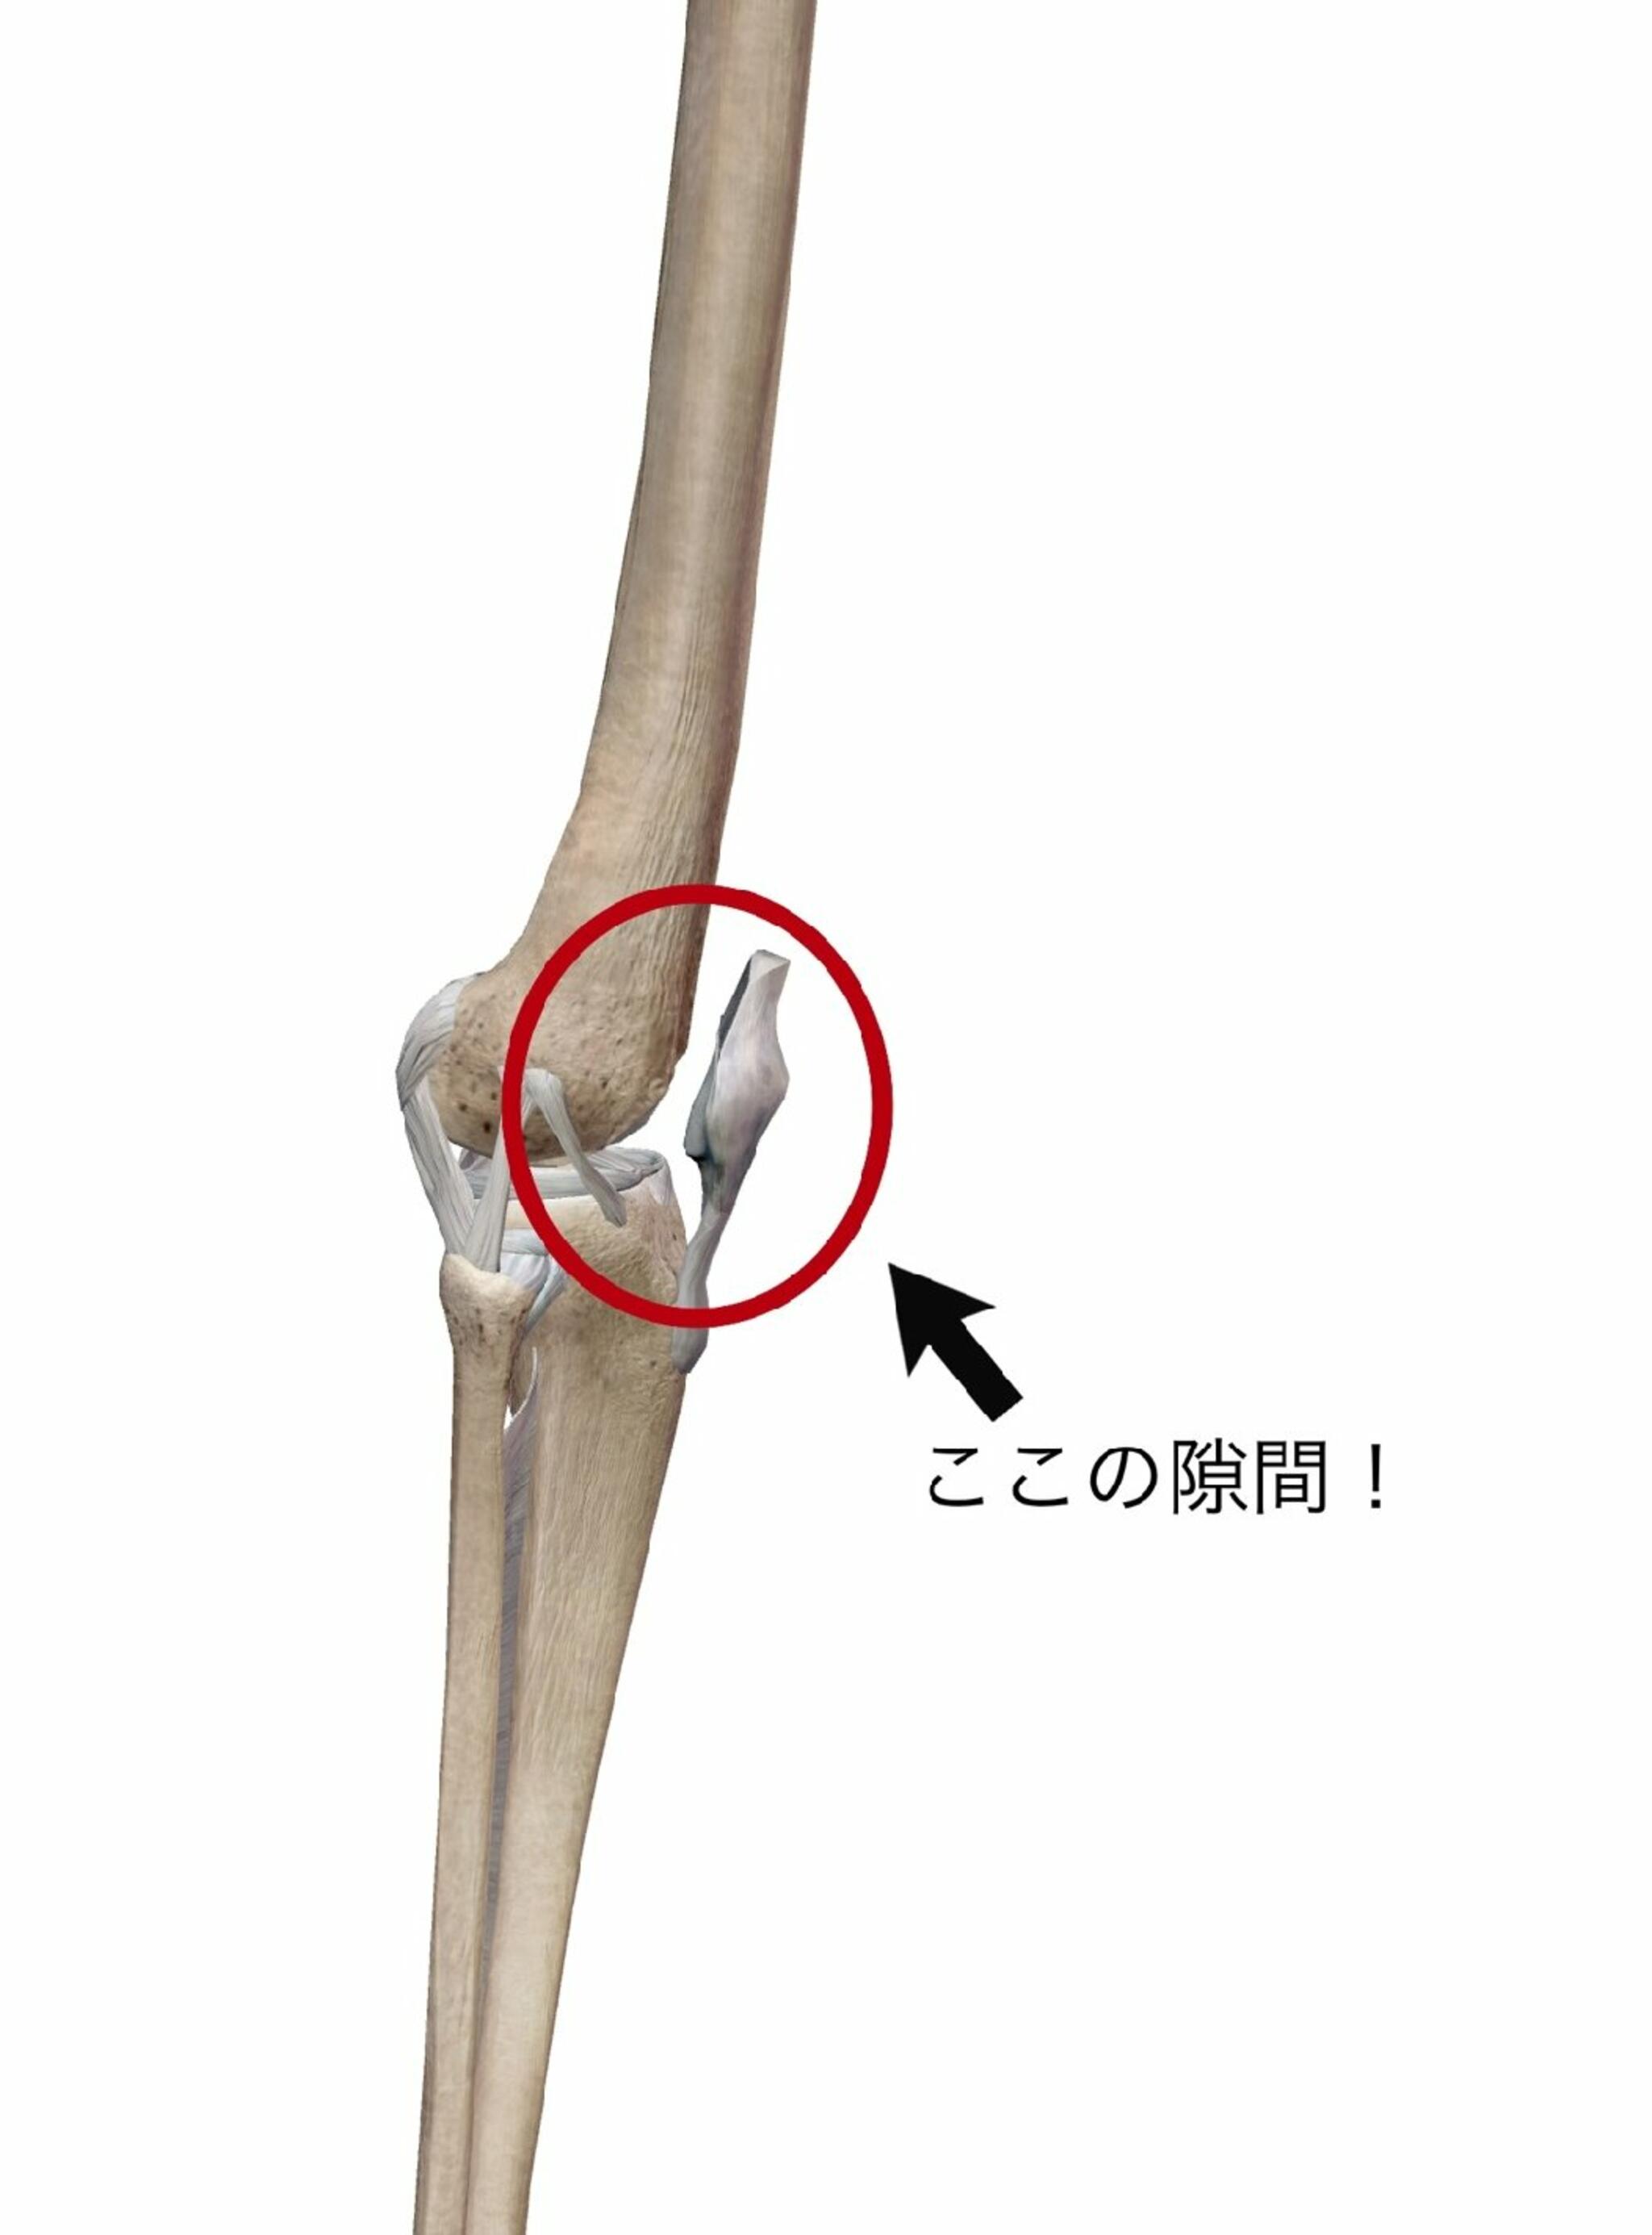 イーライフ鍼灸接骨院からのお知らせ(膝蓋大腿関節障害についてVol.2)に関する写真